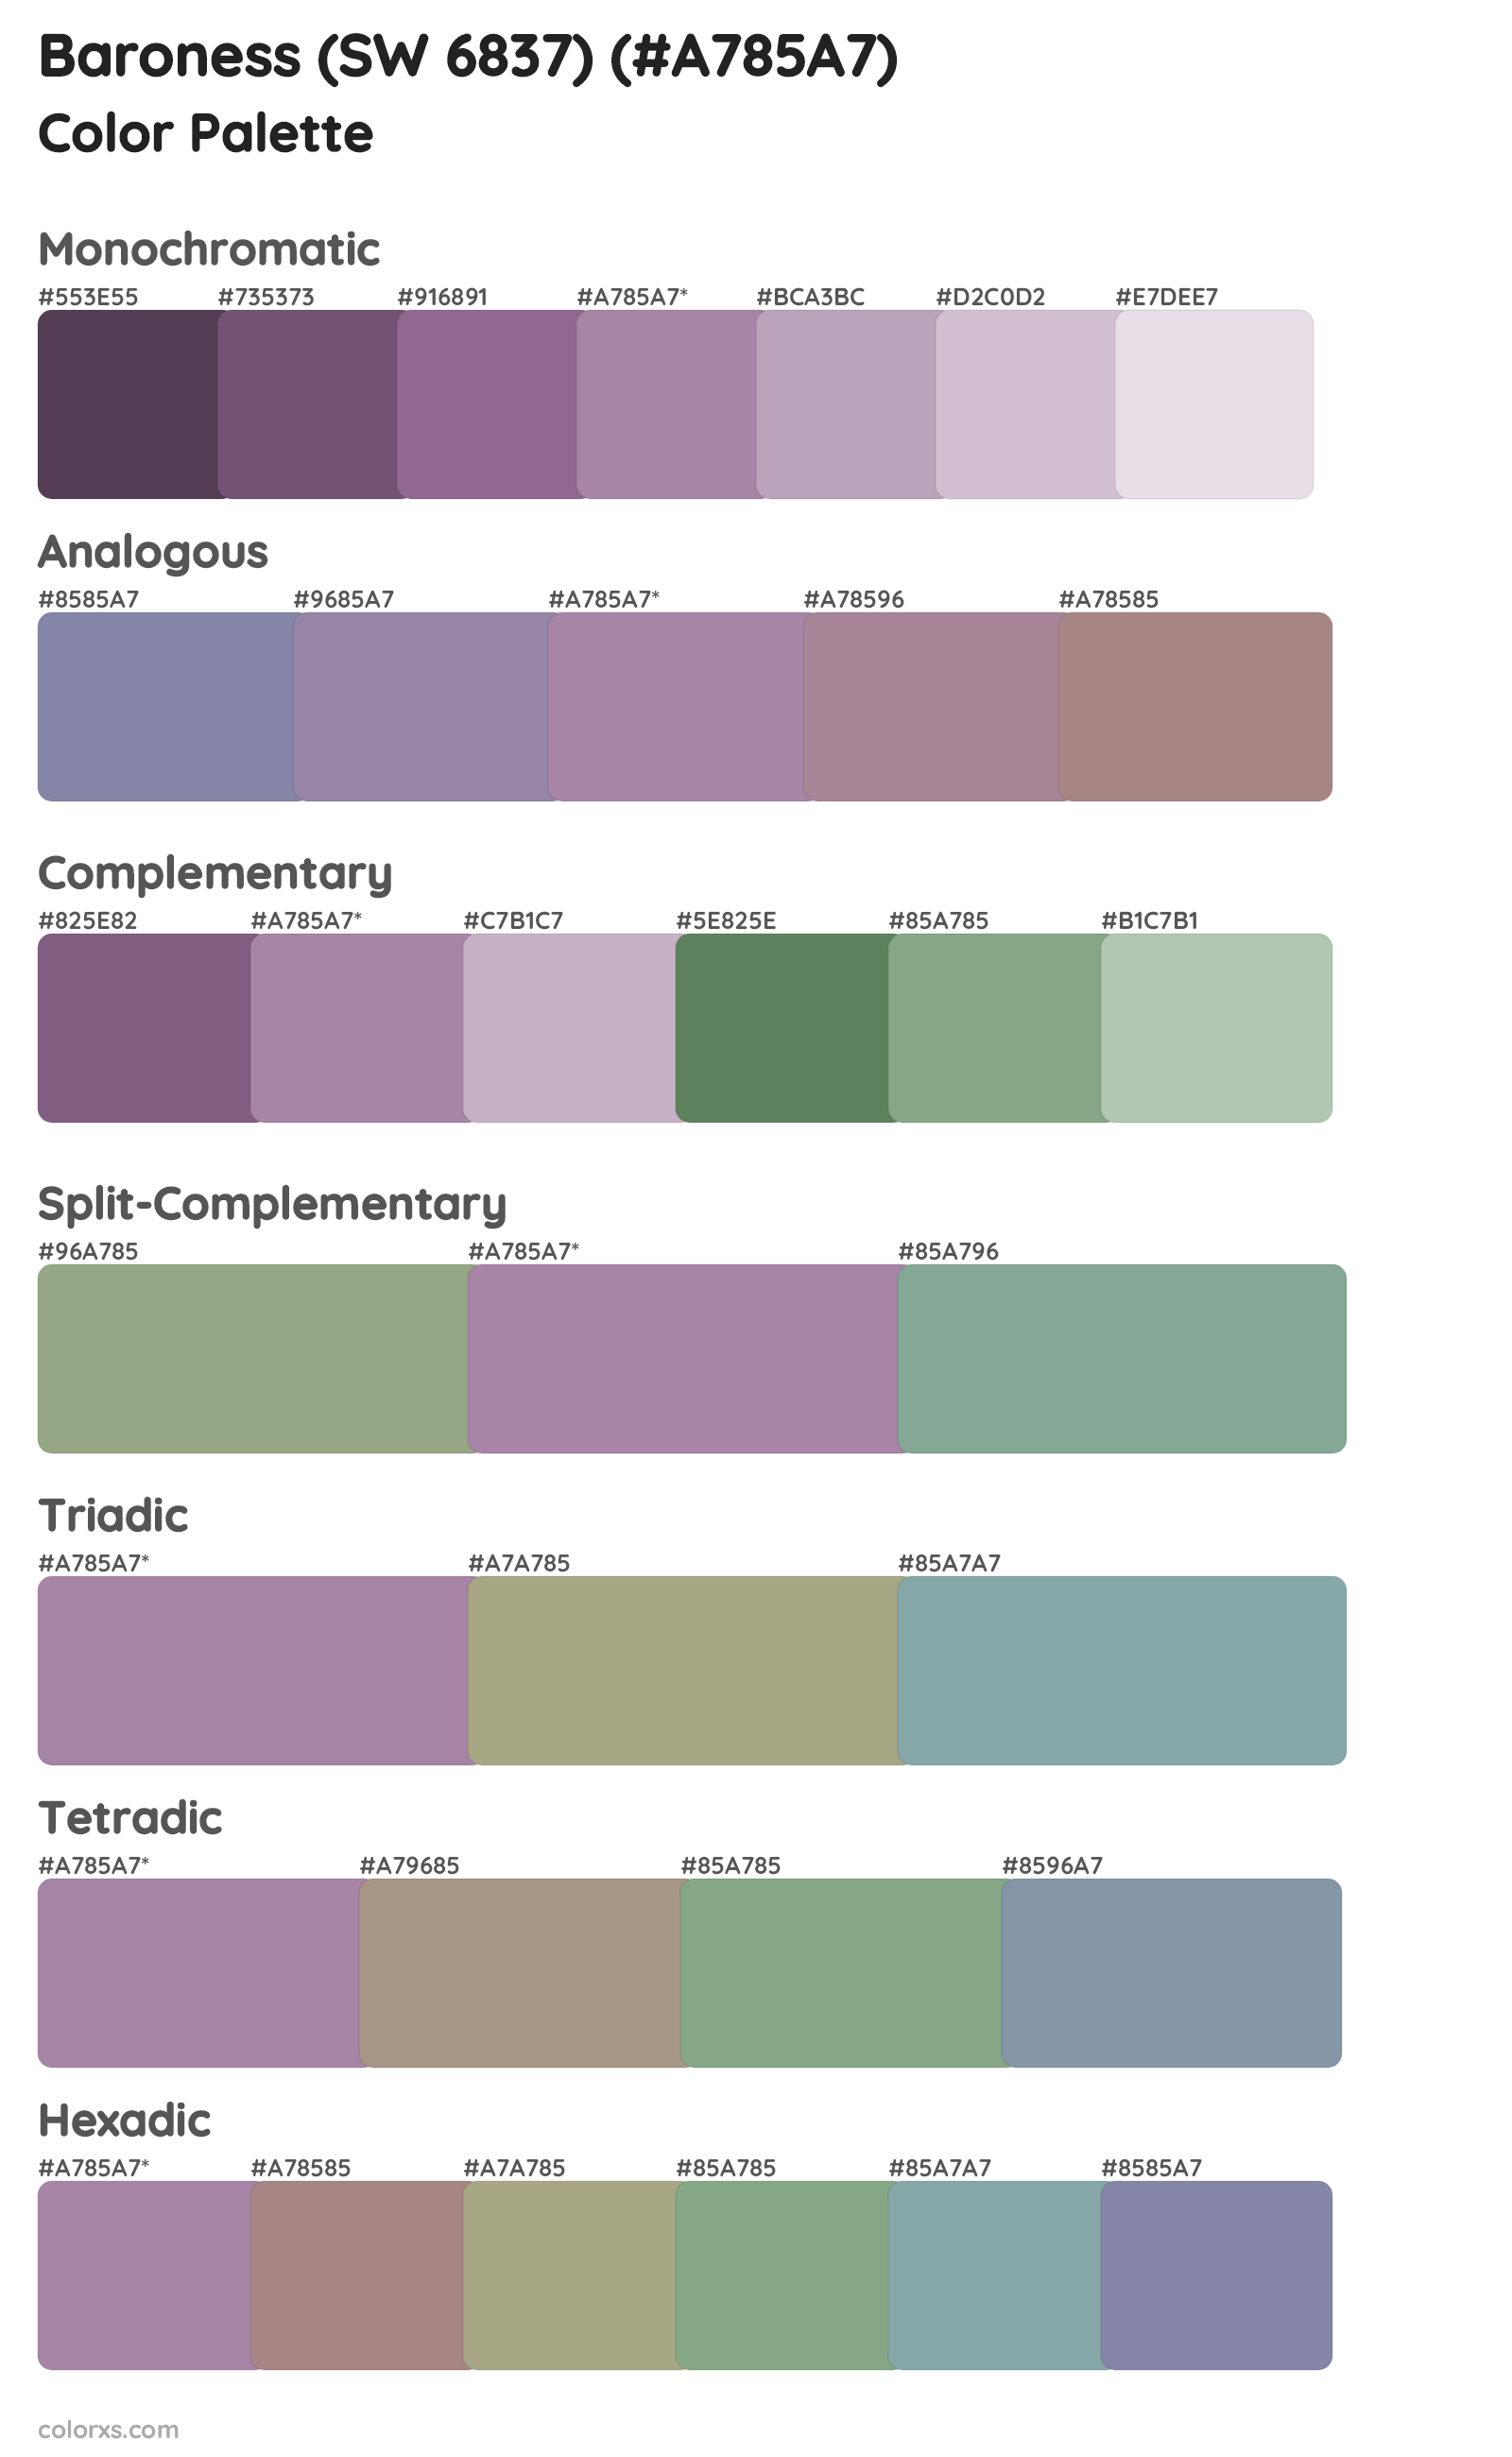 Baroness (SW 6837) Color Scheme Palettes